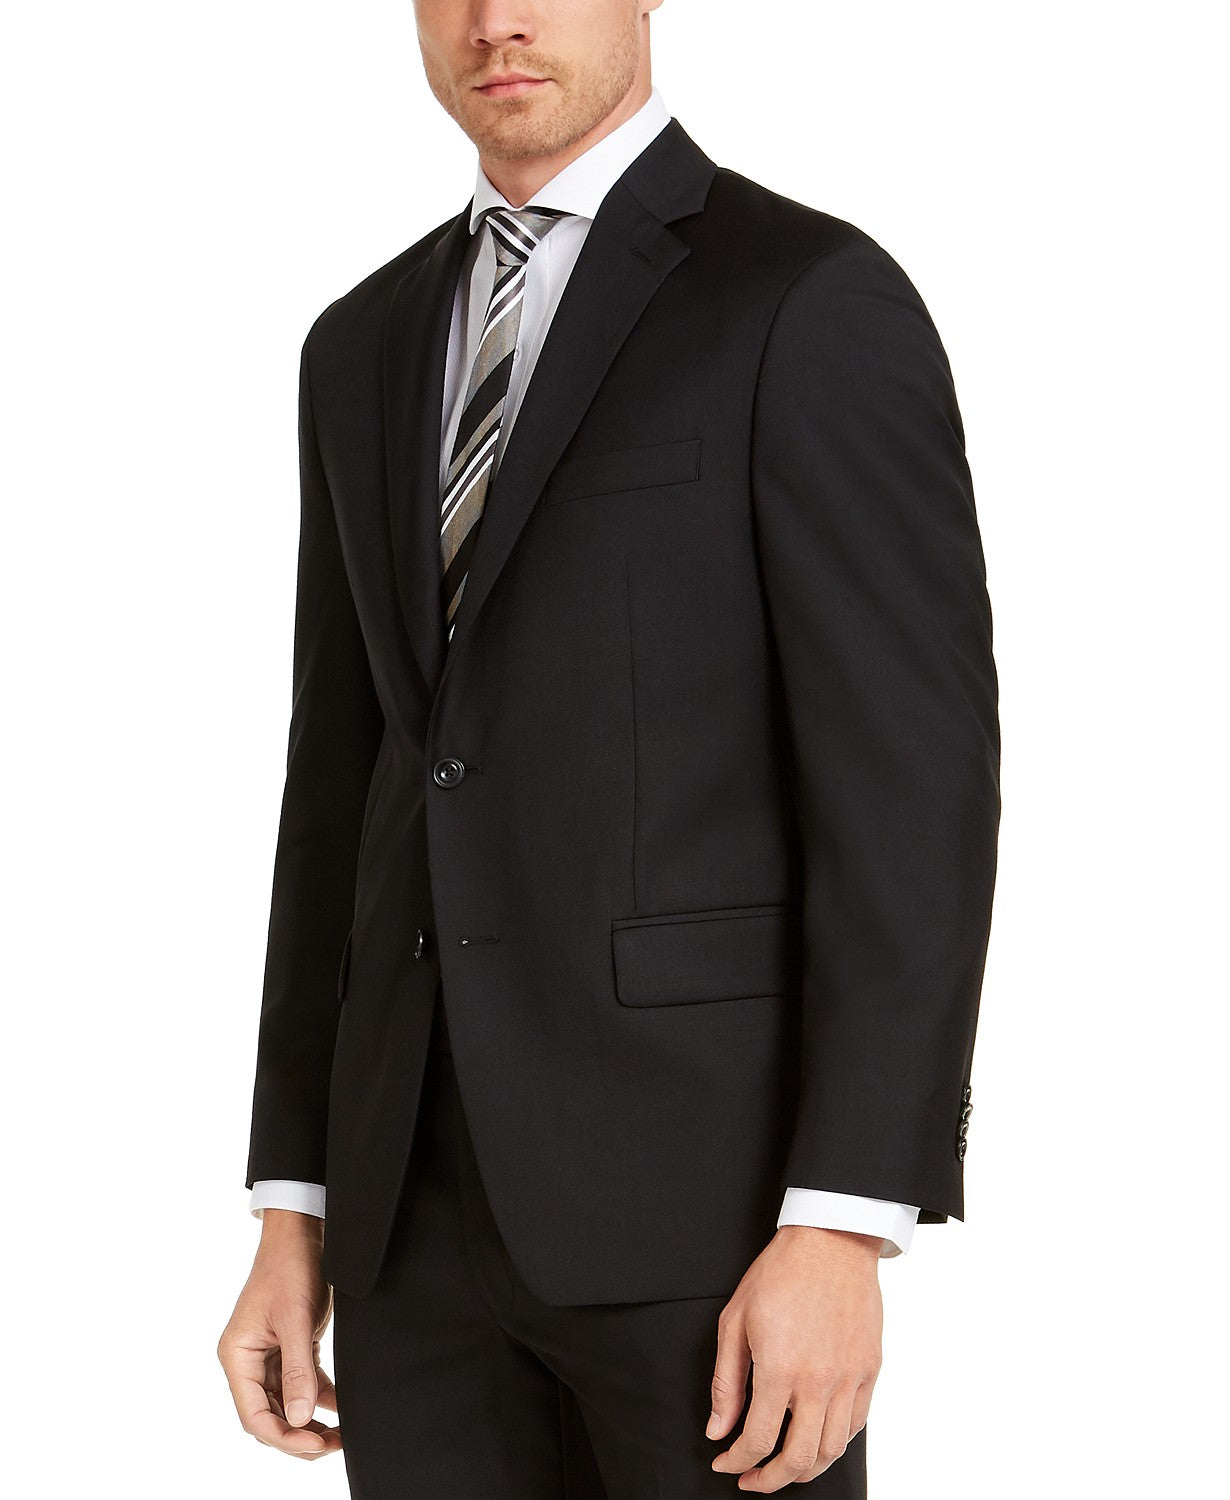 Michael Kors Men's Black Solid Suit Jacket 46L Classic-Fit Airsoft Stretch